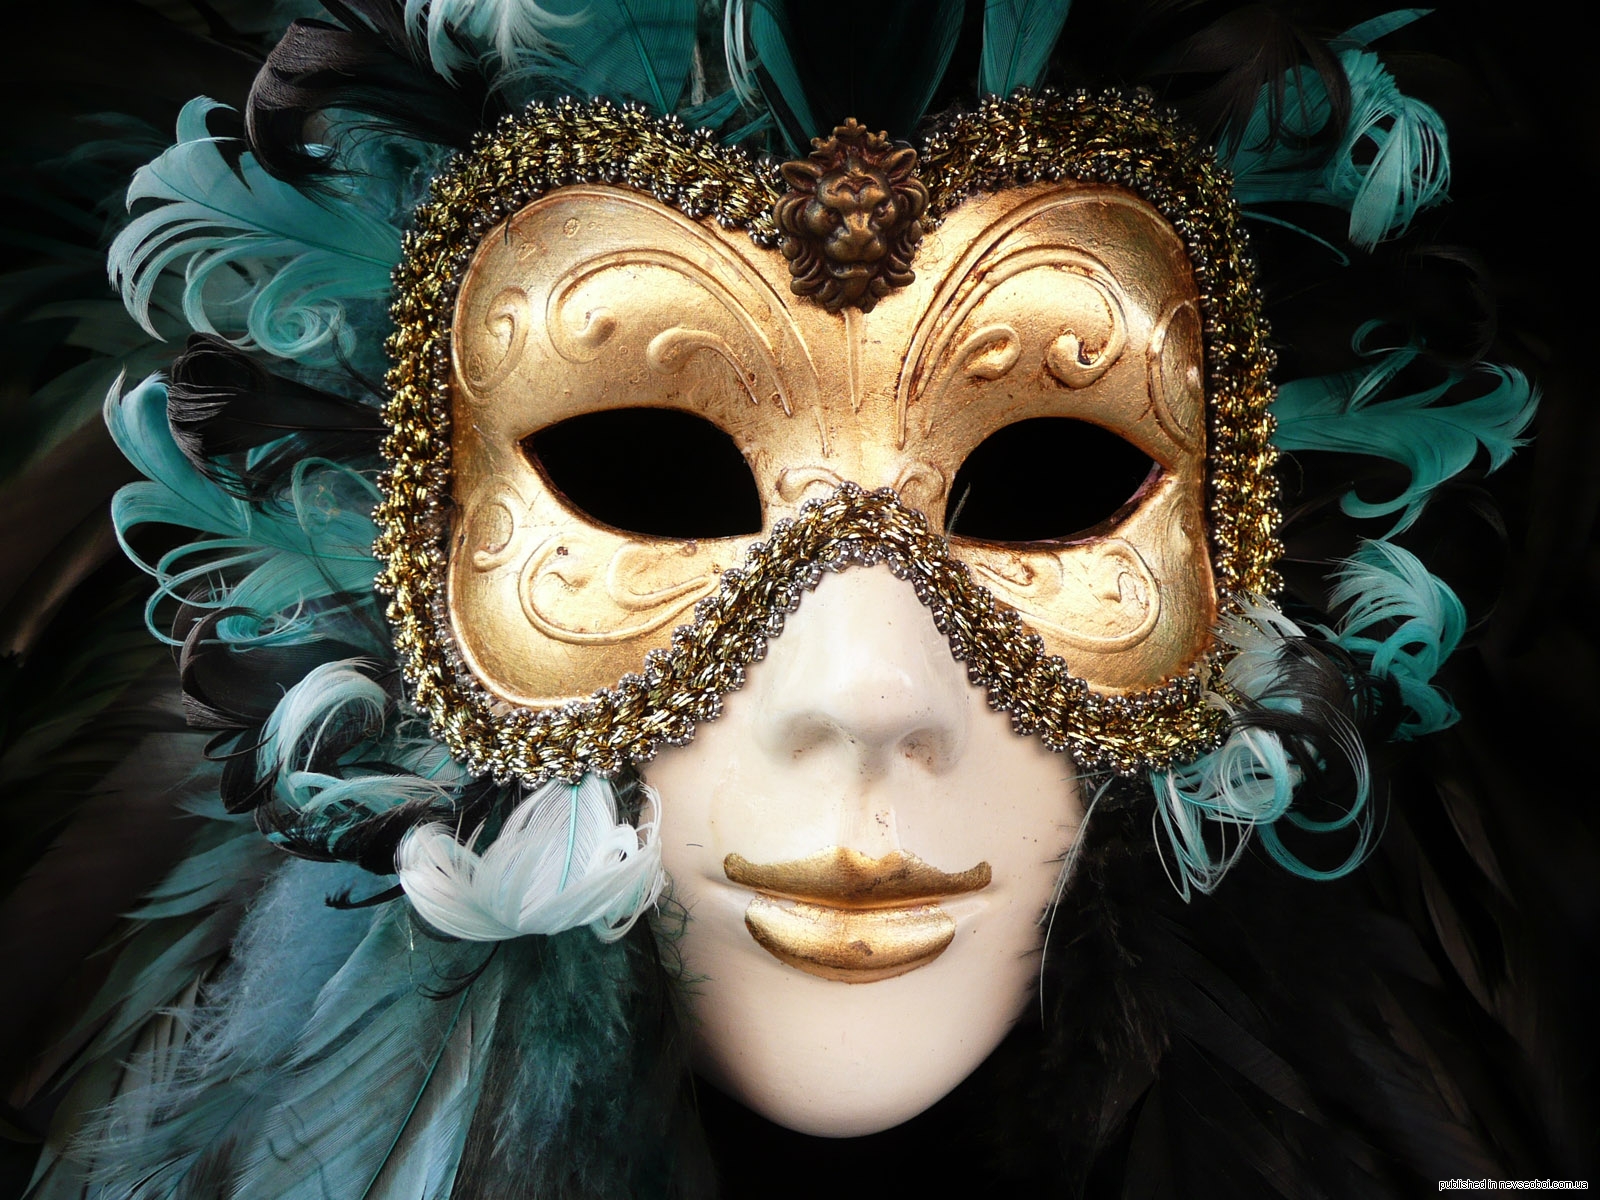 Маска лучшее слушать. Джузеппе Верди "бал-маскарад". Венецианская маска Вольтер. Венецианская маска Арлекино. Венецианский карнавал Коломбина.